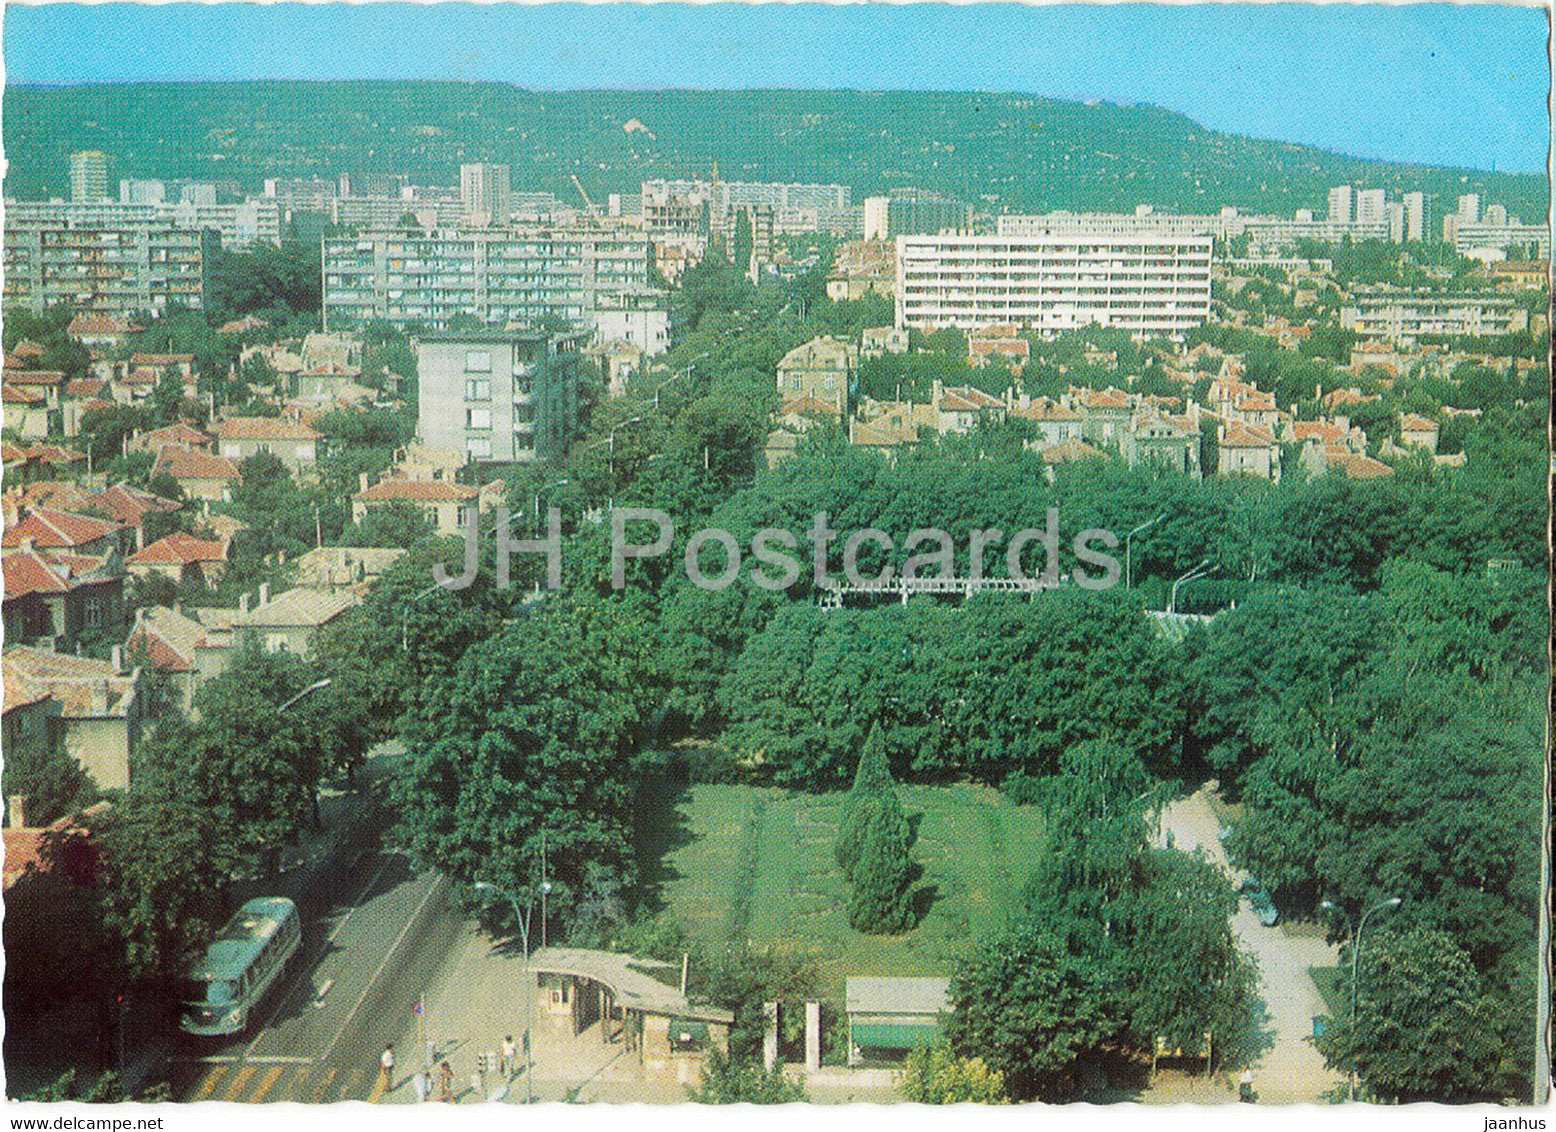 Varna - City View - bus - Bulgaria - unused - JH Postcards